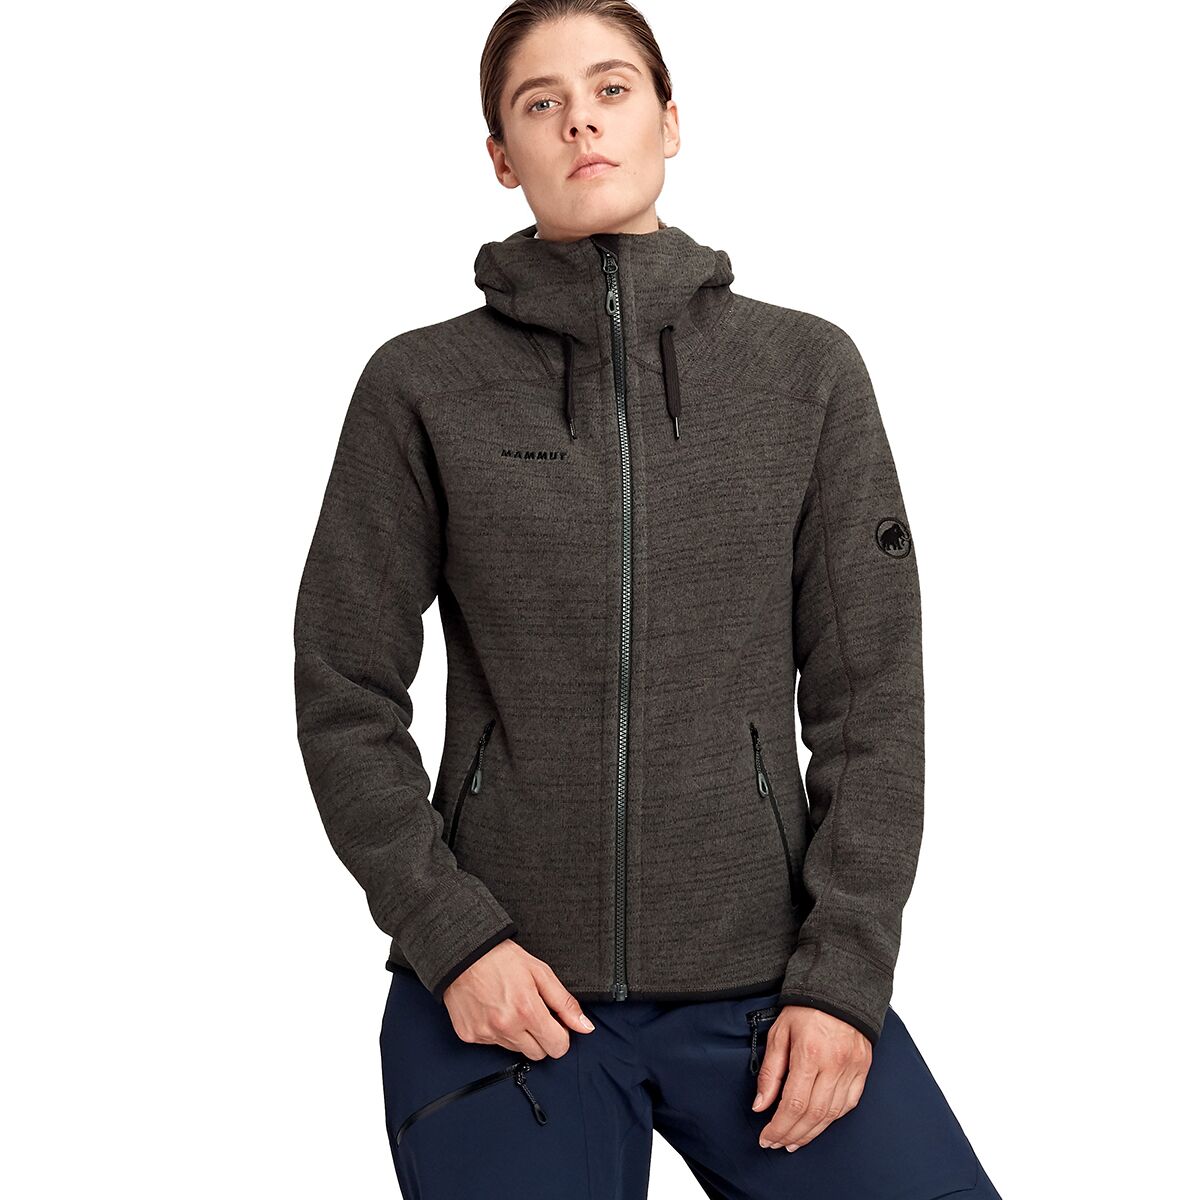 Arctic ML Hooded Fleece Jacket - Women